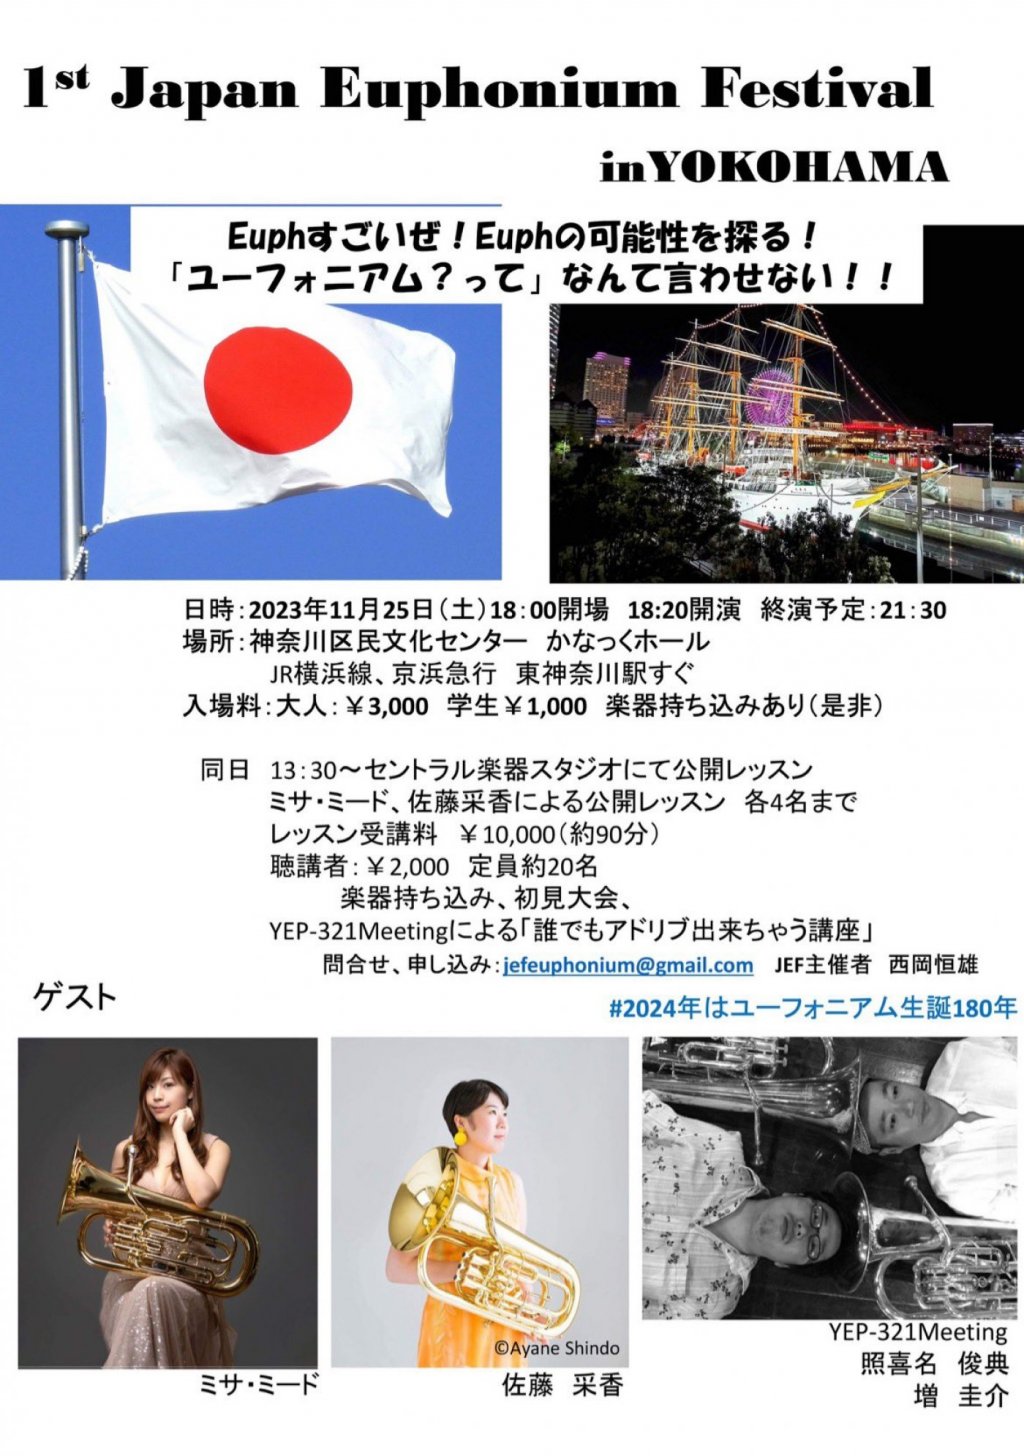 1st Japan Euphonium Festival in YOKOHAMA